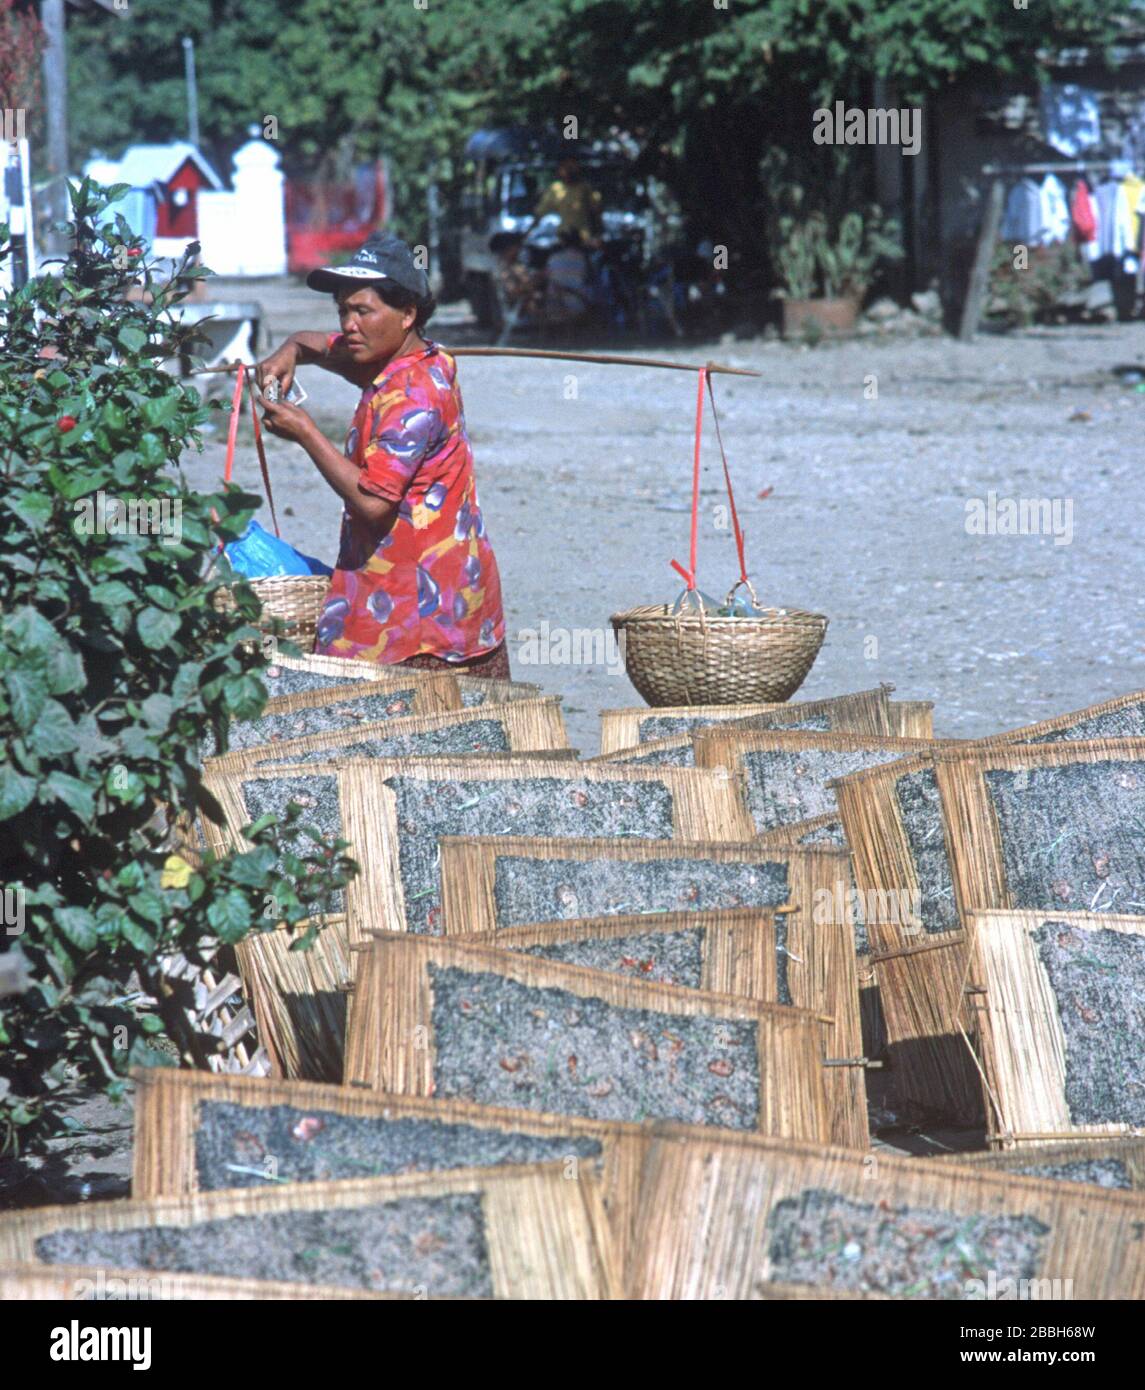 Croustillant de mauvaises herbes du fleuve Mékong séchant sur des cadres de bambou / Rush dans la rue à Luang Prabang, Laos. L'herbe lao ou Kaipen / Kaiphaen / Khai Pene est une collation populaire, récoltée à partir du lit de la rivière. En arrière-plan, un homme transporte de la nourriture dans deux paniers en osier, suspendus aux extrémités d'un poteau de bambou reposant sur son épaule. La ville de Luang Prabang est classée au patrimoine mondial de l'UNESCO. Banque D'Images